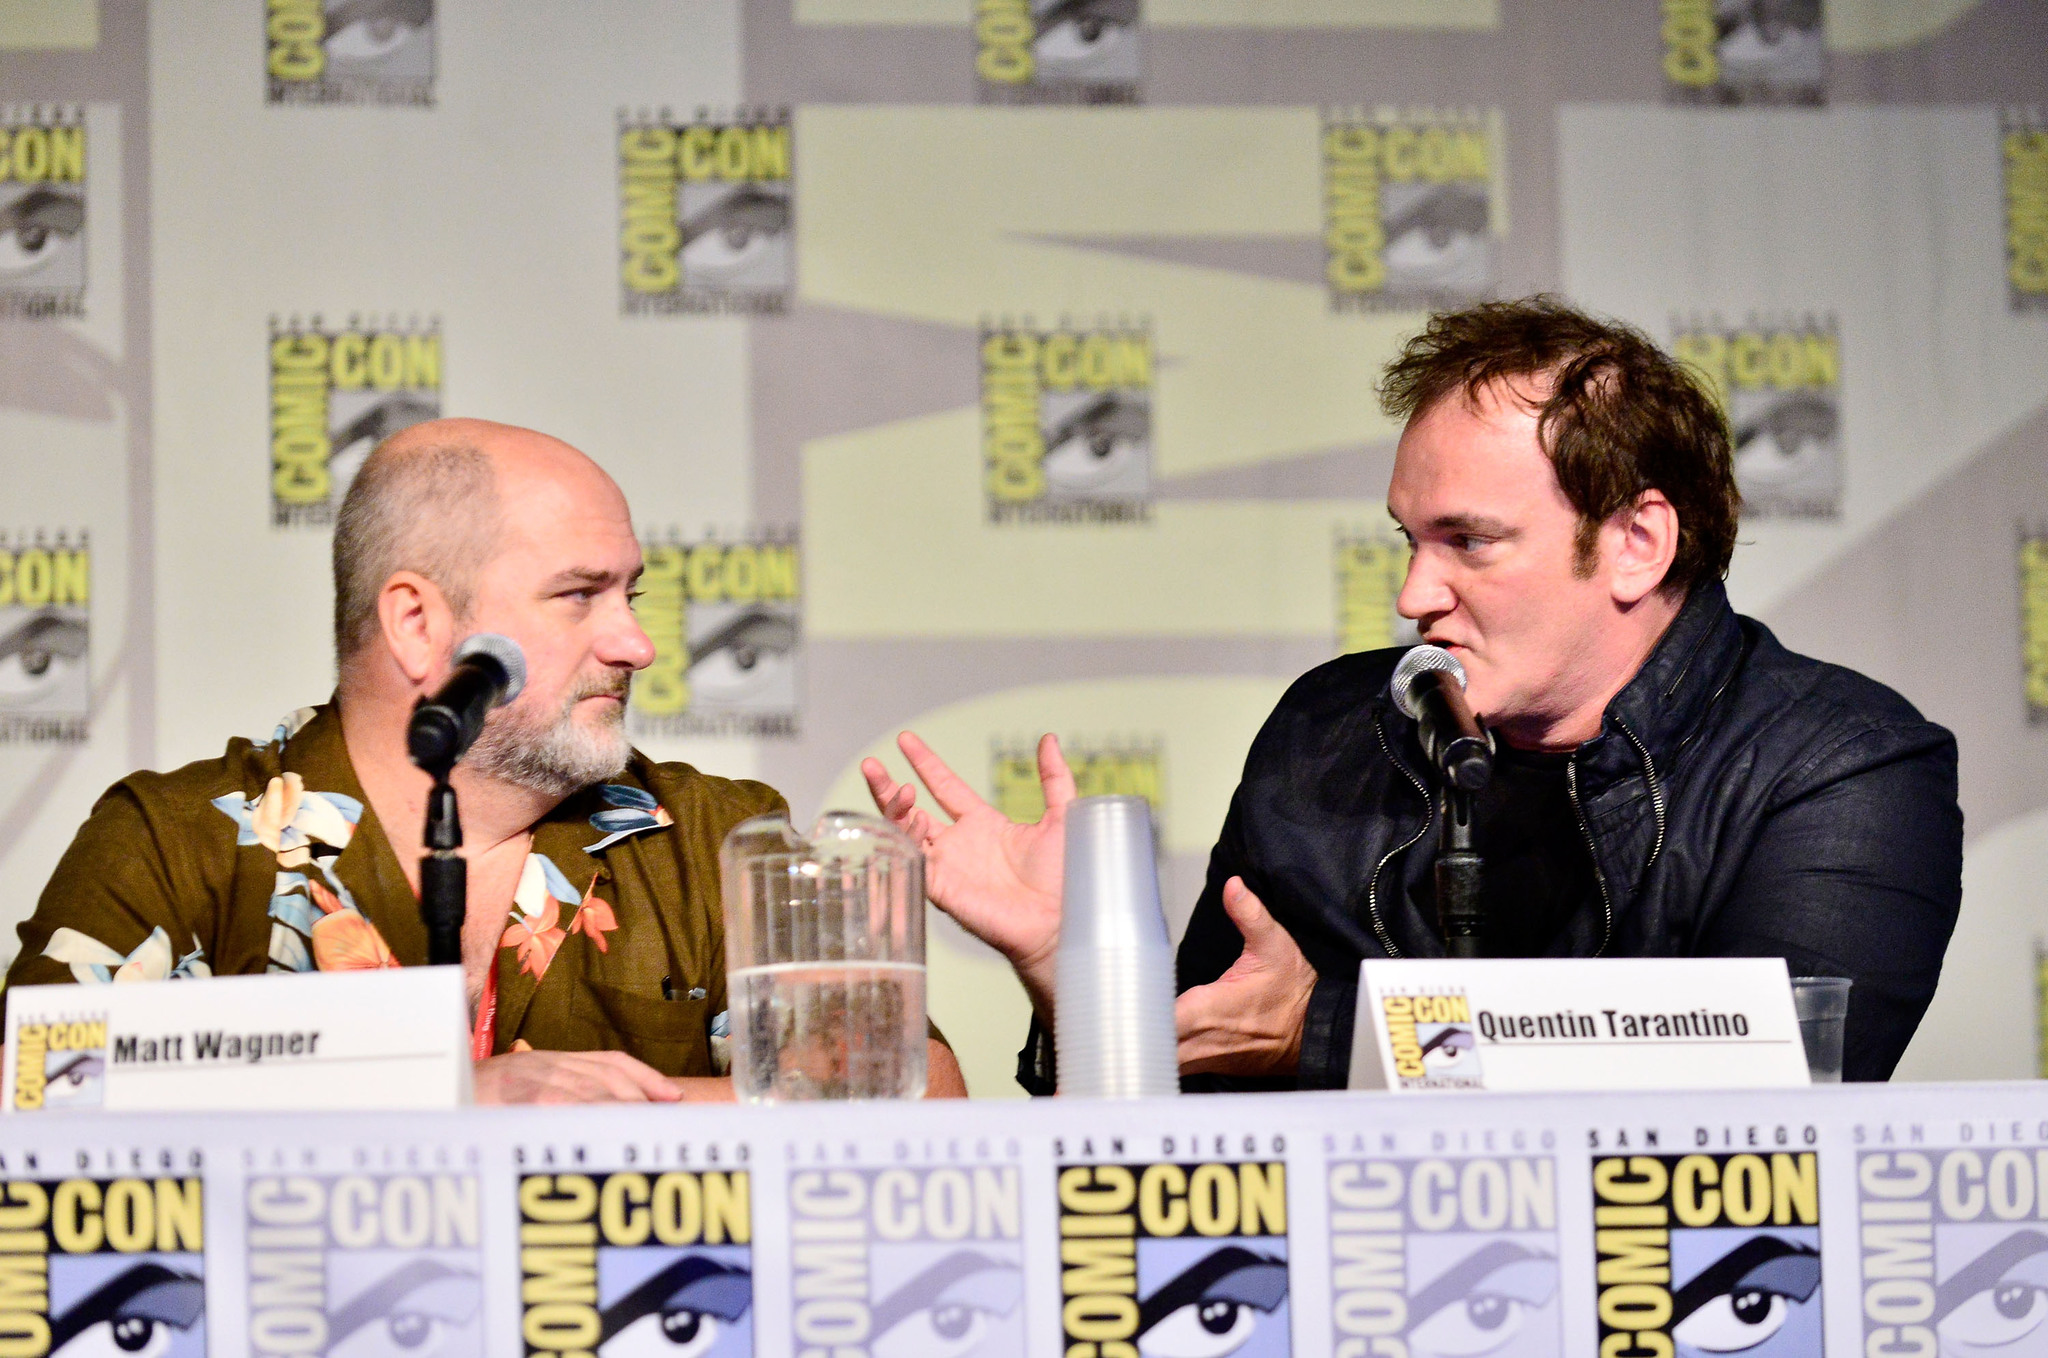 Quentin Tarantino and Matt Wagner